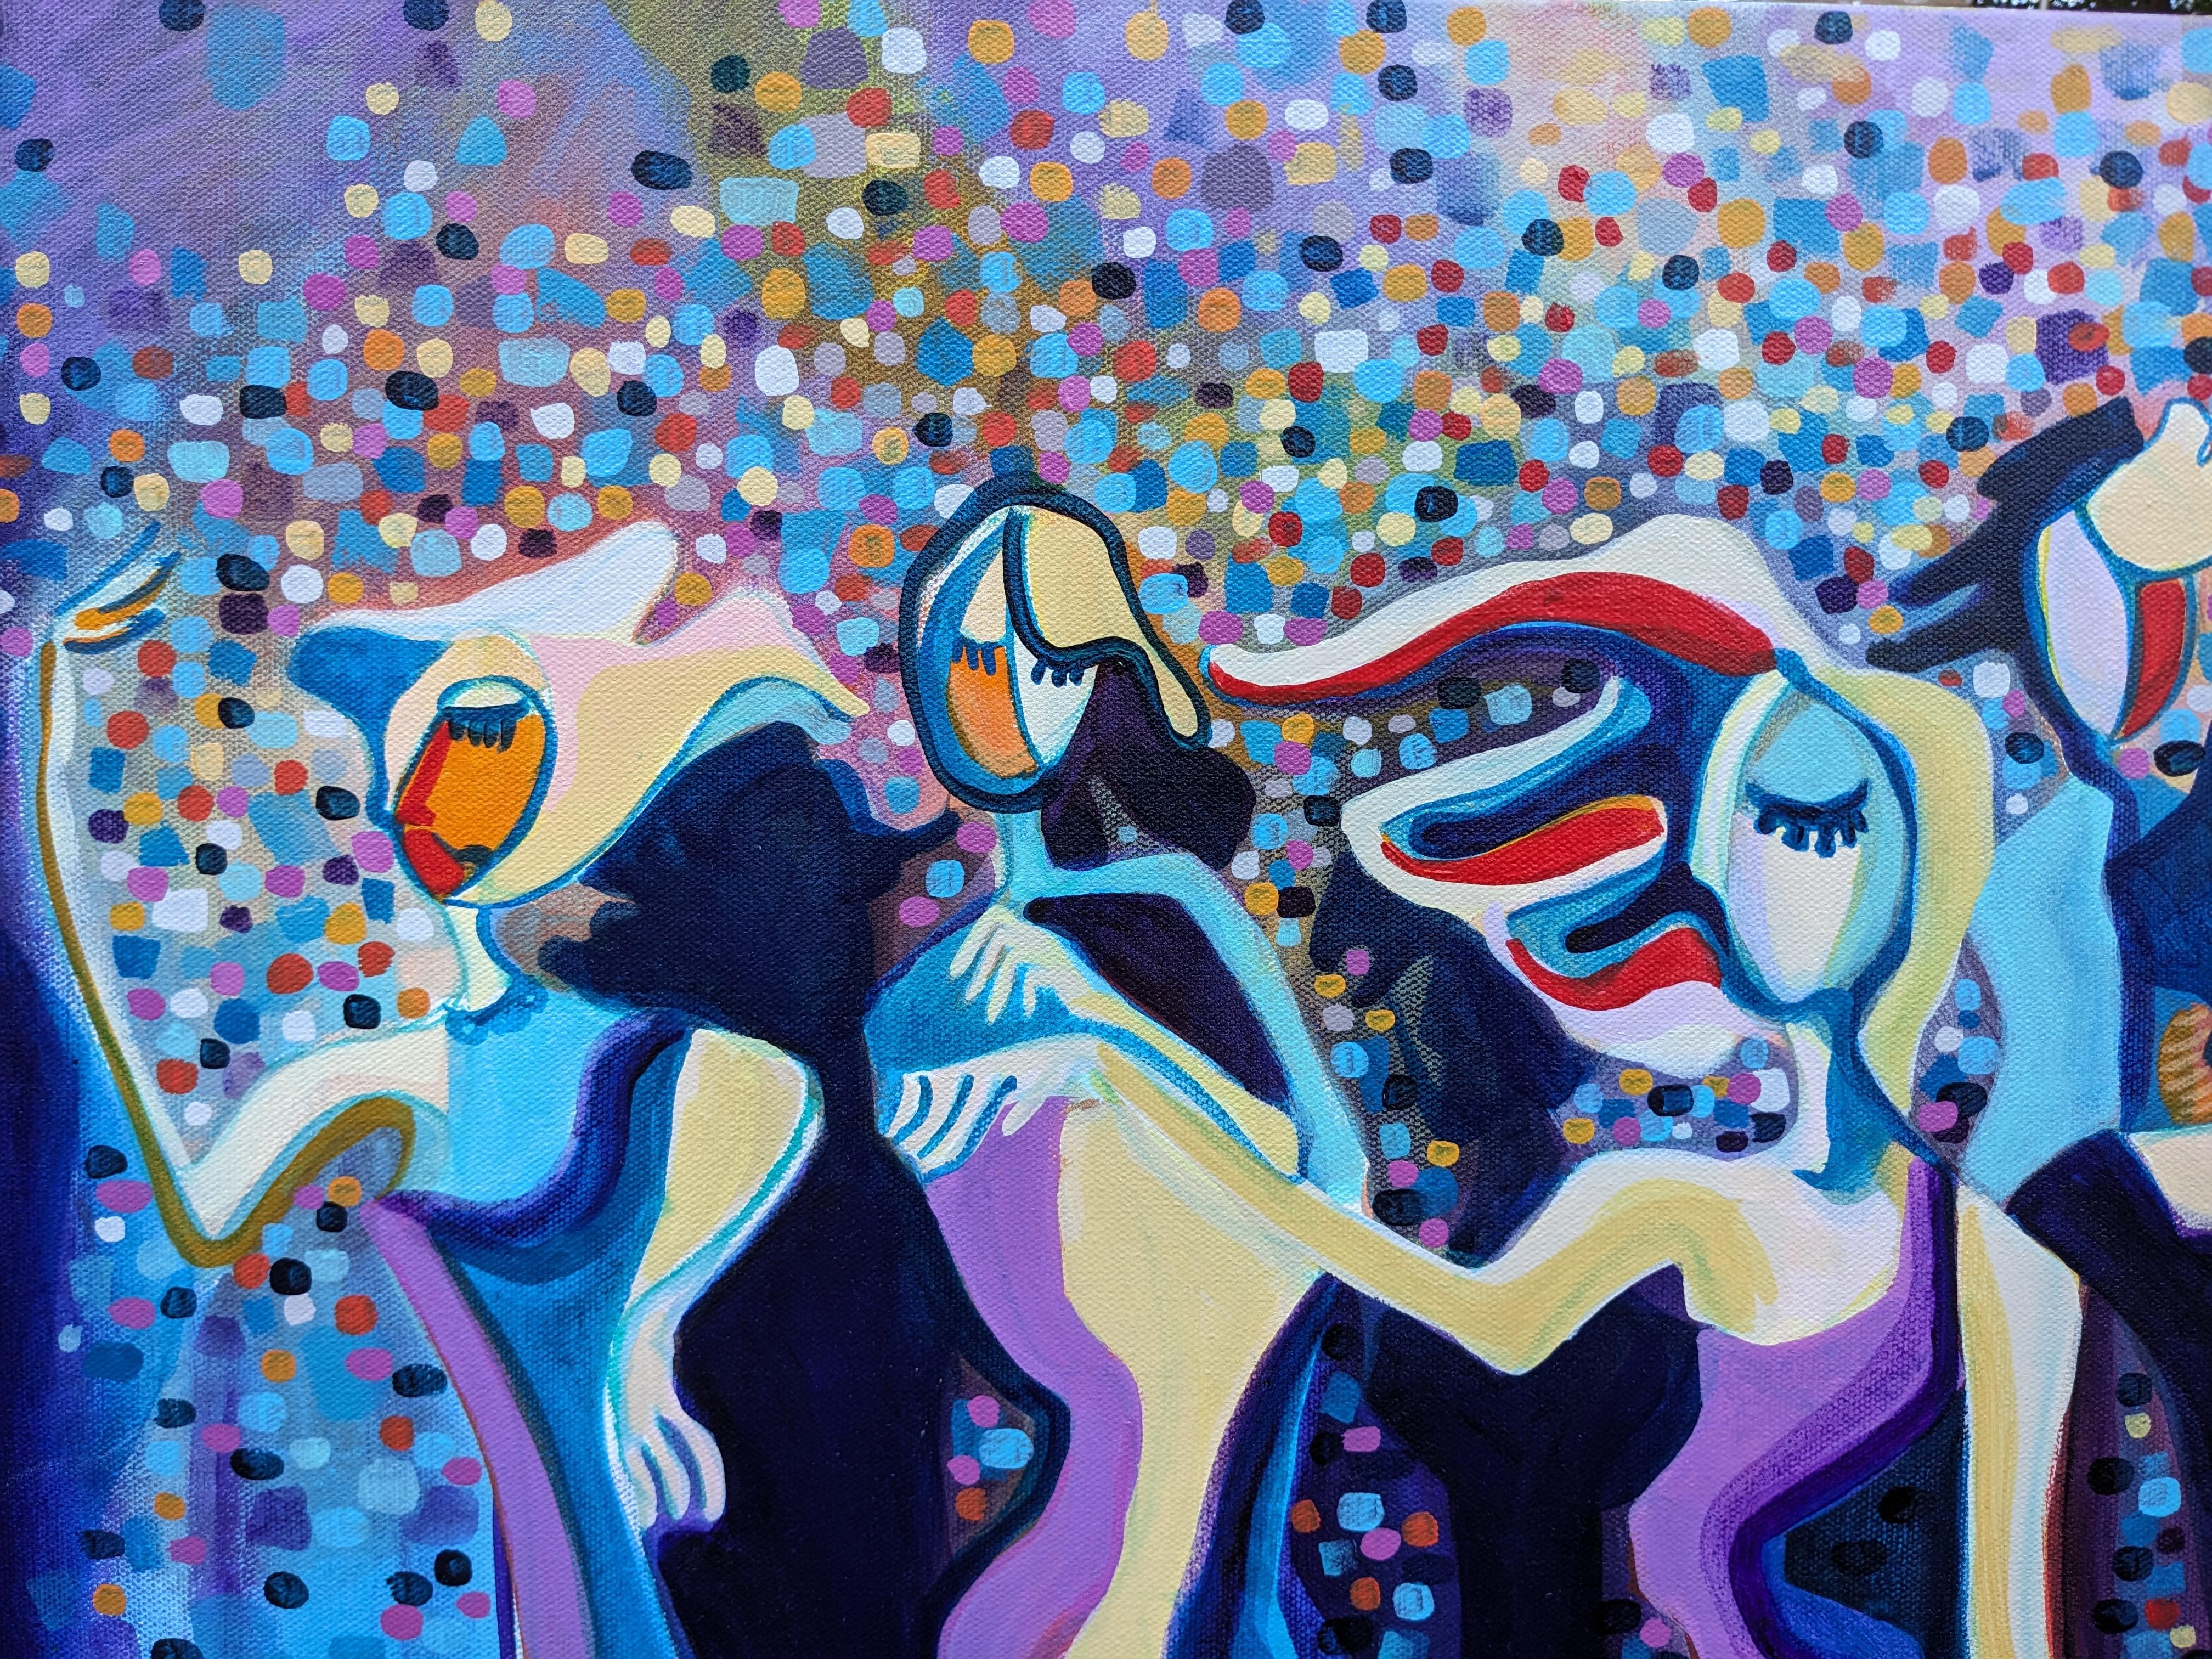 <p>Kommentare des Künstlers<br>Das Gemälde zeigt eine lebhafte Szene, in der eine Gruppe von Menschen fröhlich tanzt und sich mit geschlossenen Augen in der Musik verliert. Ihre farbenfrohe Kleidung und ihre fließenden Bewegungen verleihen der